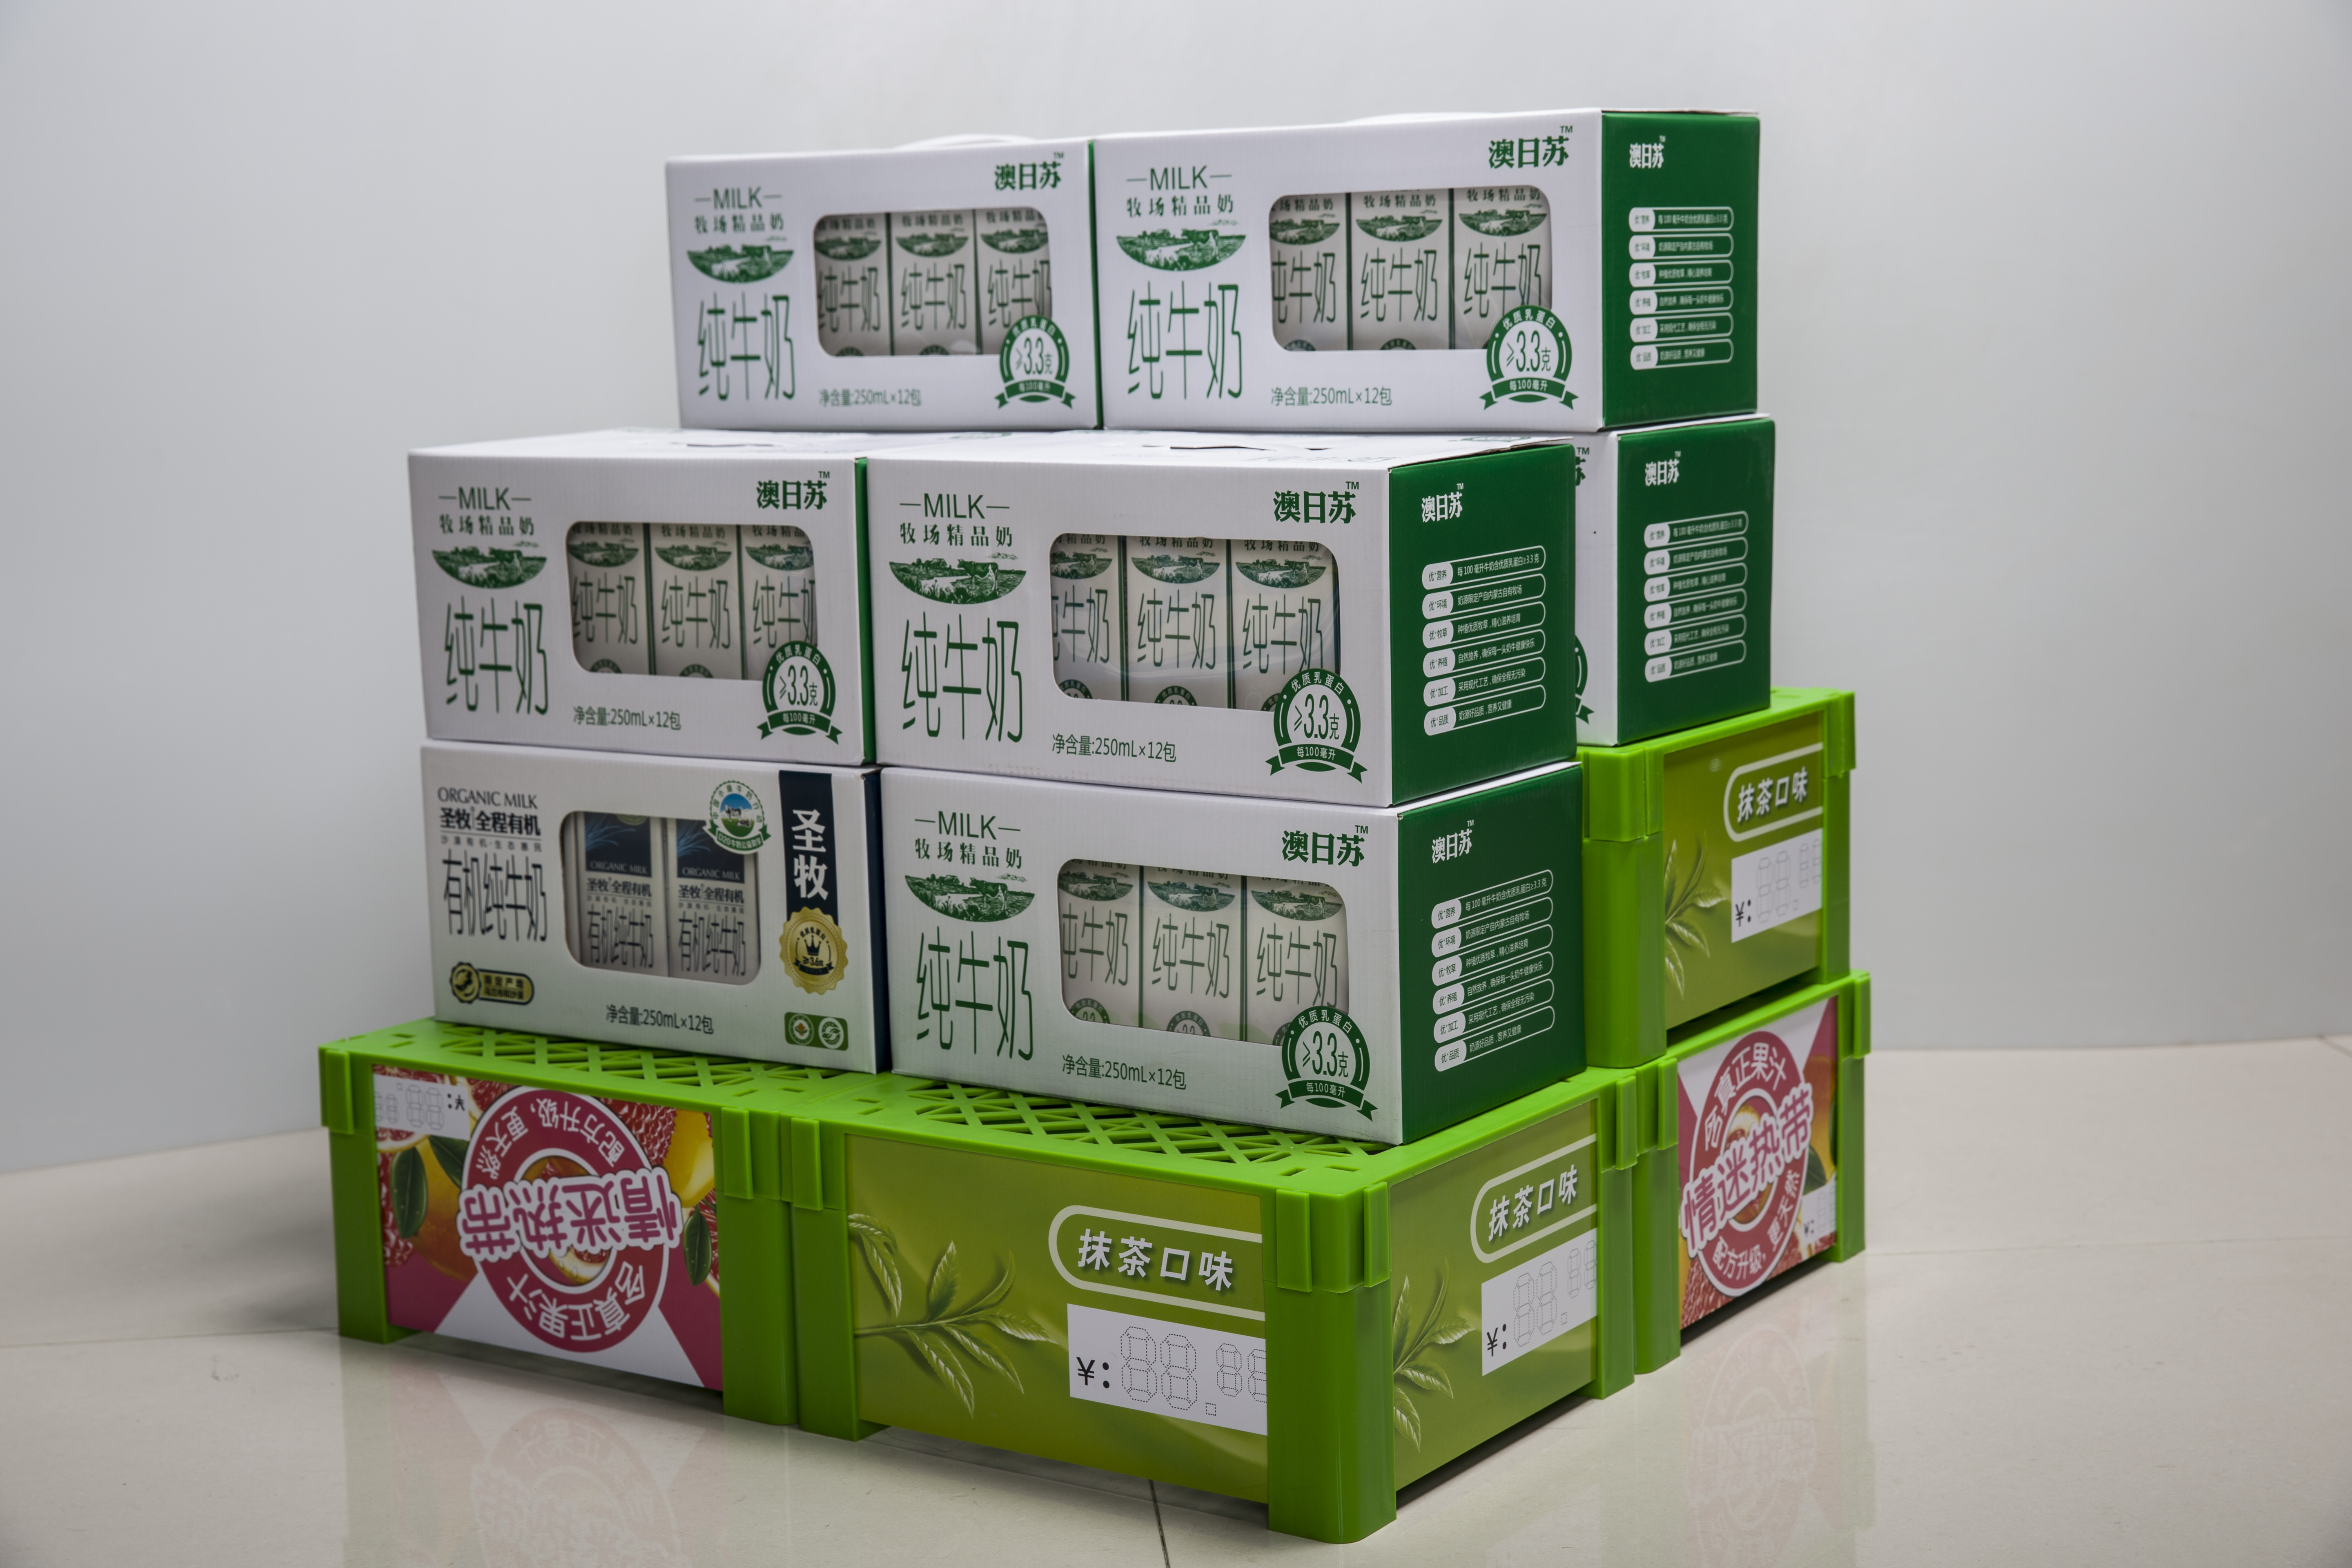 Ecobox XS-009 Kunststoff-Milch-Standes-Massenanzeige TG für Supermarkt